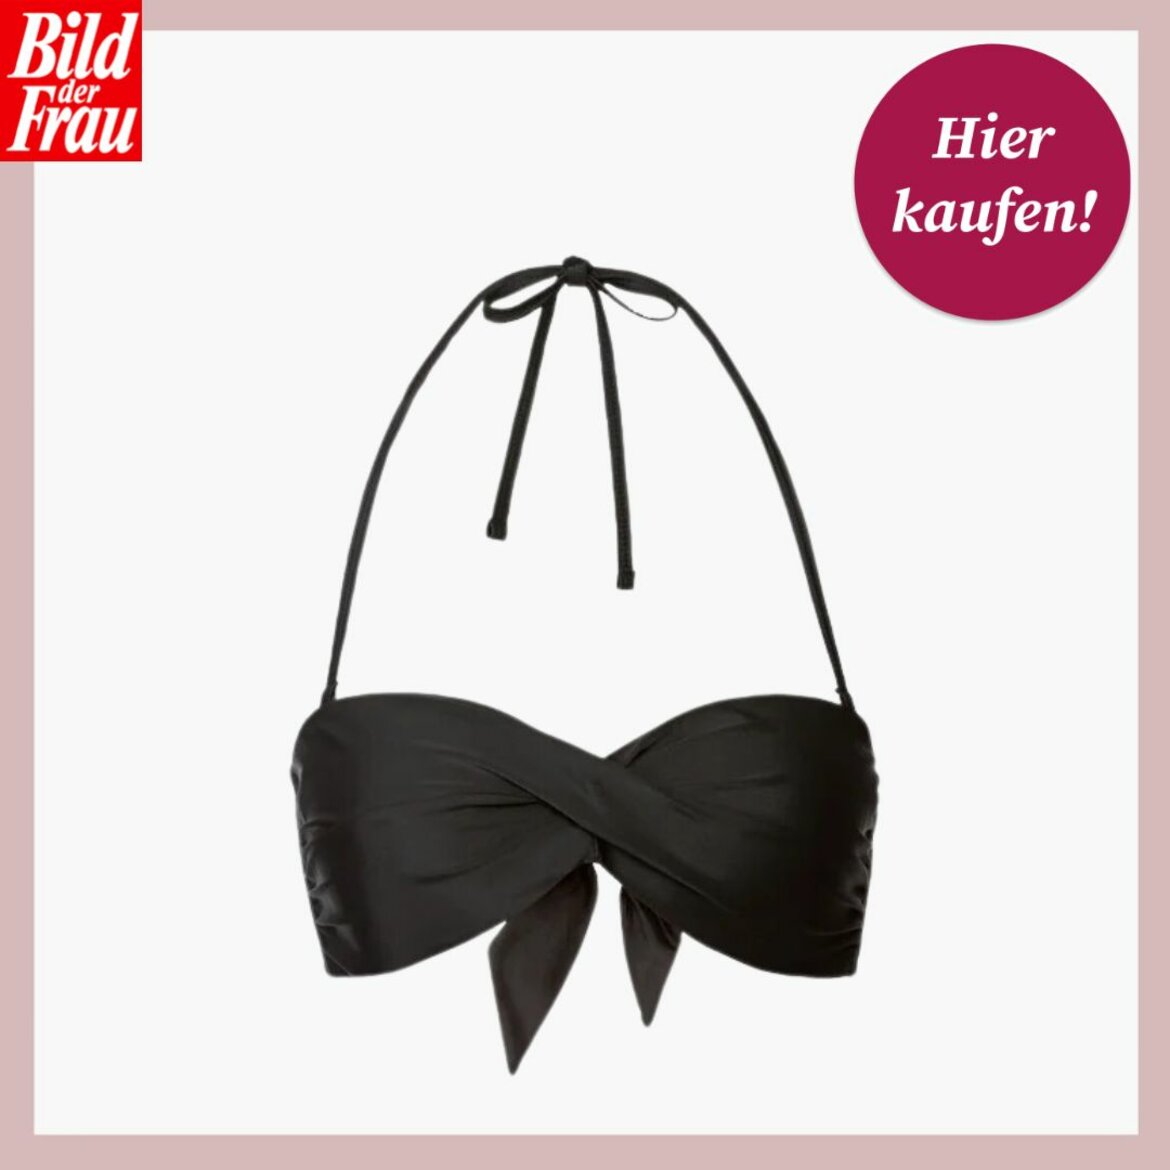 Schwarzes Bandeau-Bikinioberteil mit Schleife und Nackenbändern auf weißem Hintergrund, oben links "Bild der Frau"-Logo. | © Lidl